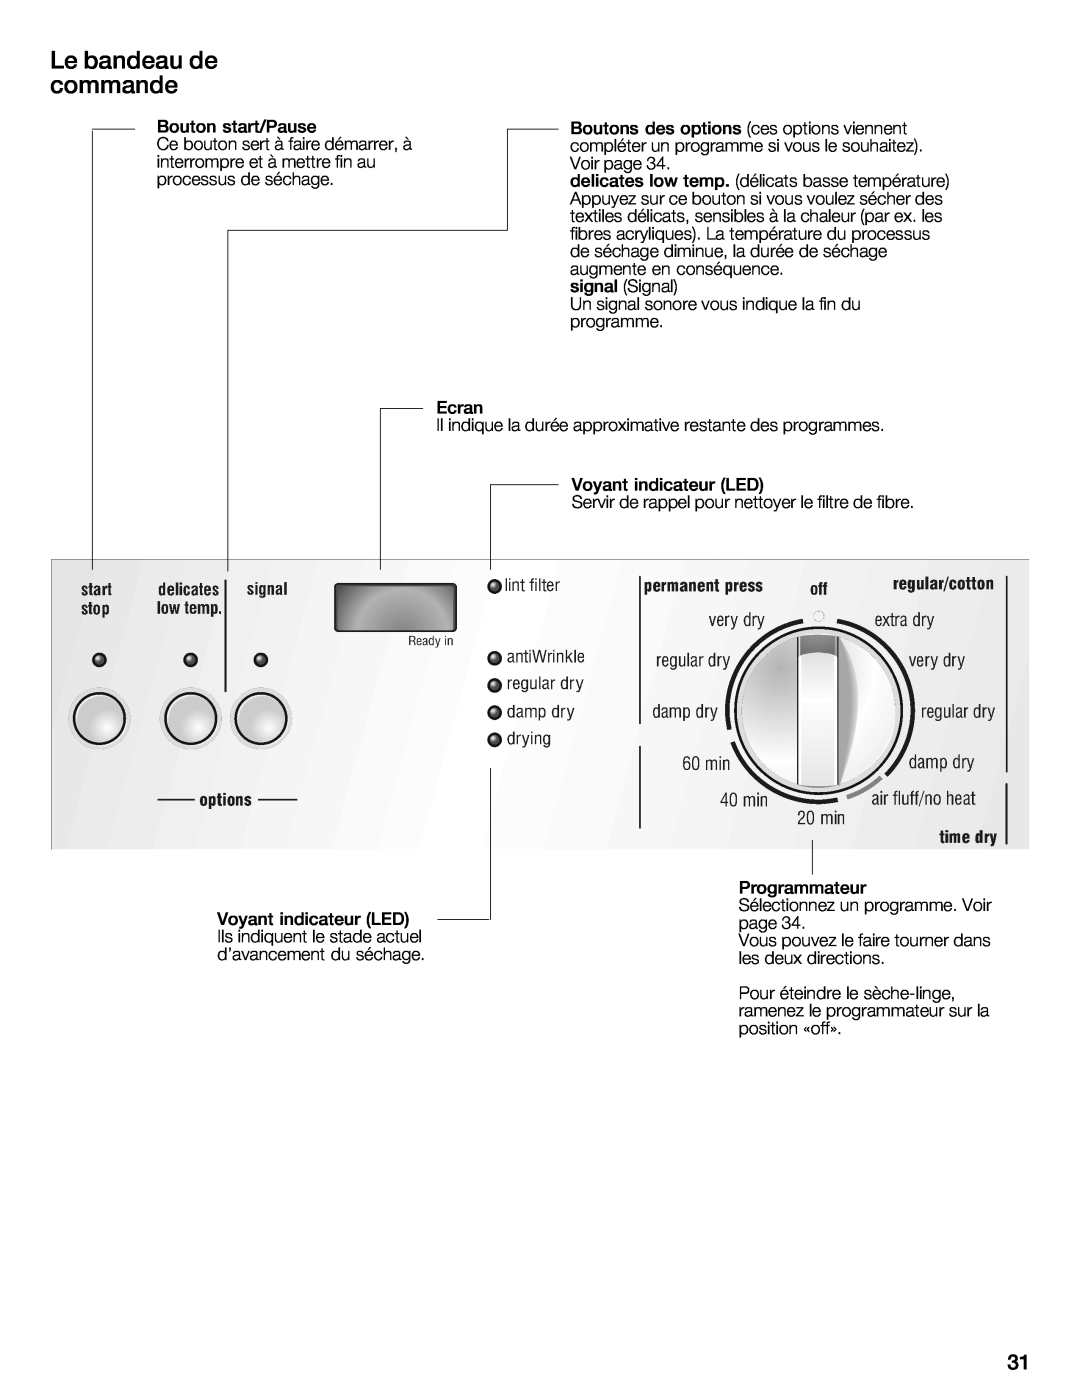 Bosch Appliances WTXD5321CN, WTXD5321US installation instructions Le bandeau de commande, tempdélicats 